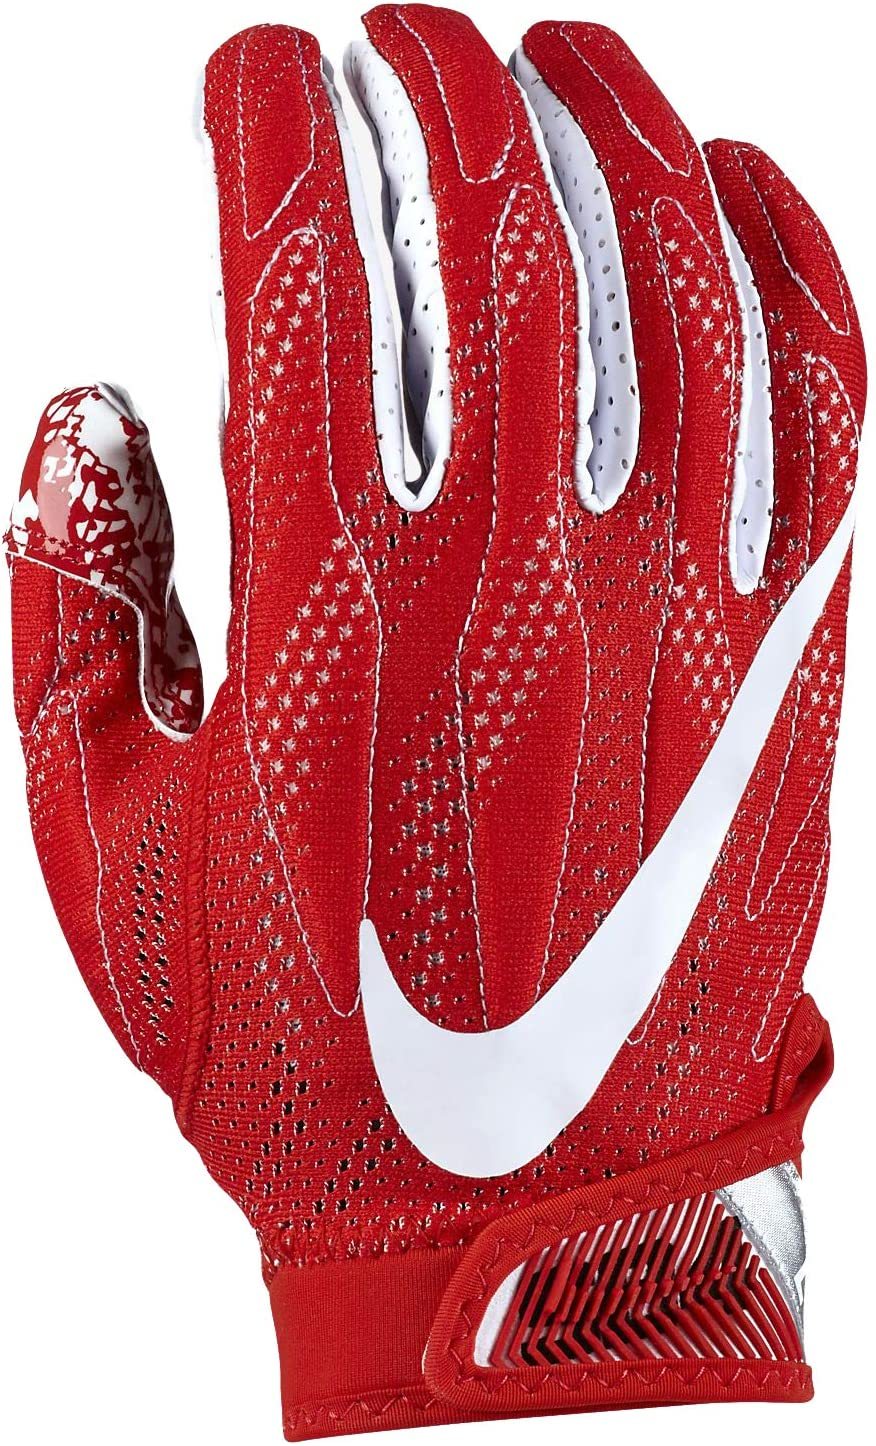 superbad 4.0 gloves